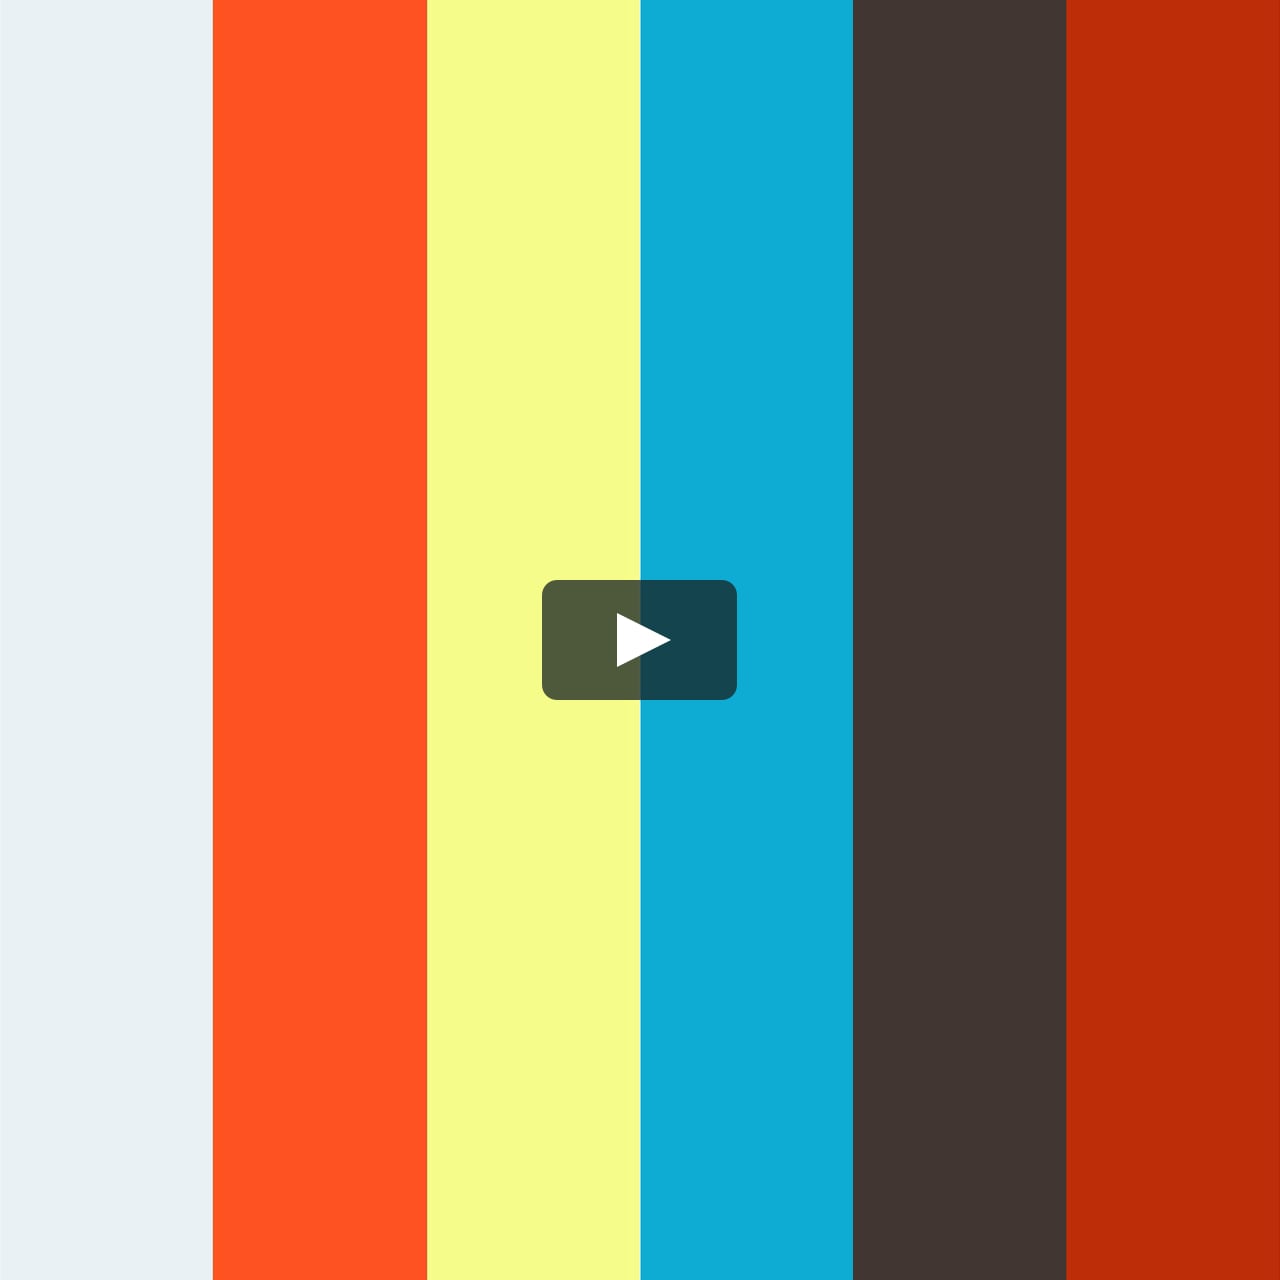 鰹節でふわふわ感を再現したディズニーの ダッフィー 弁当 On Vimeo